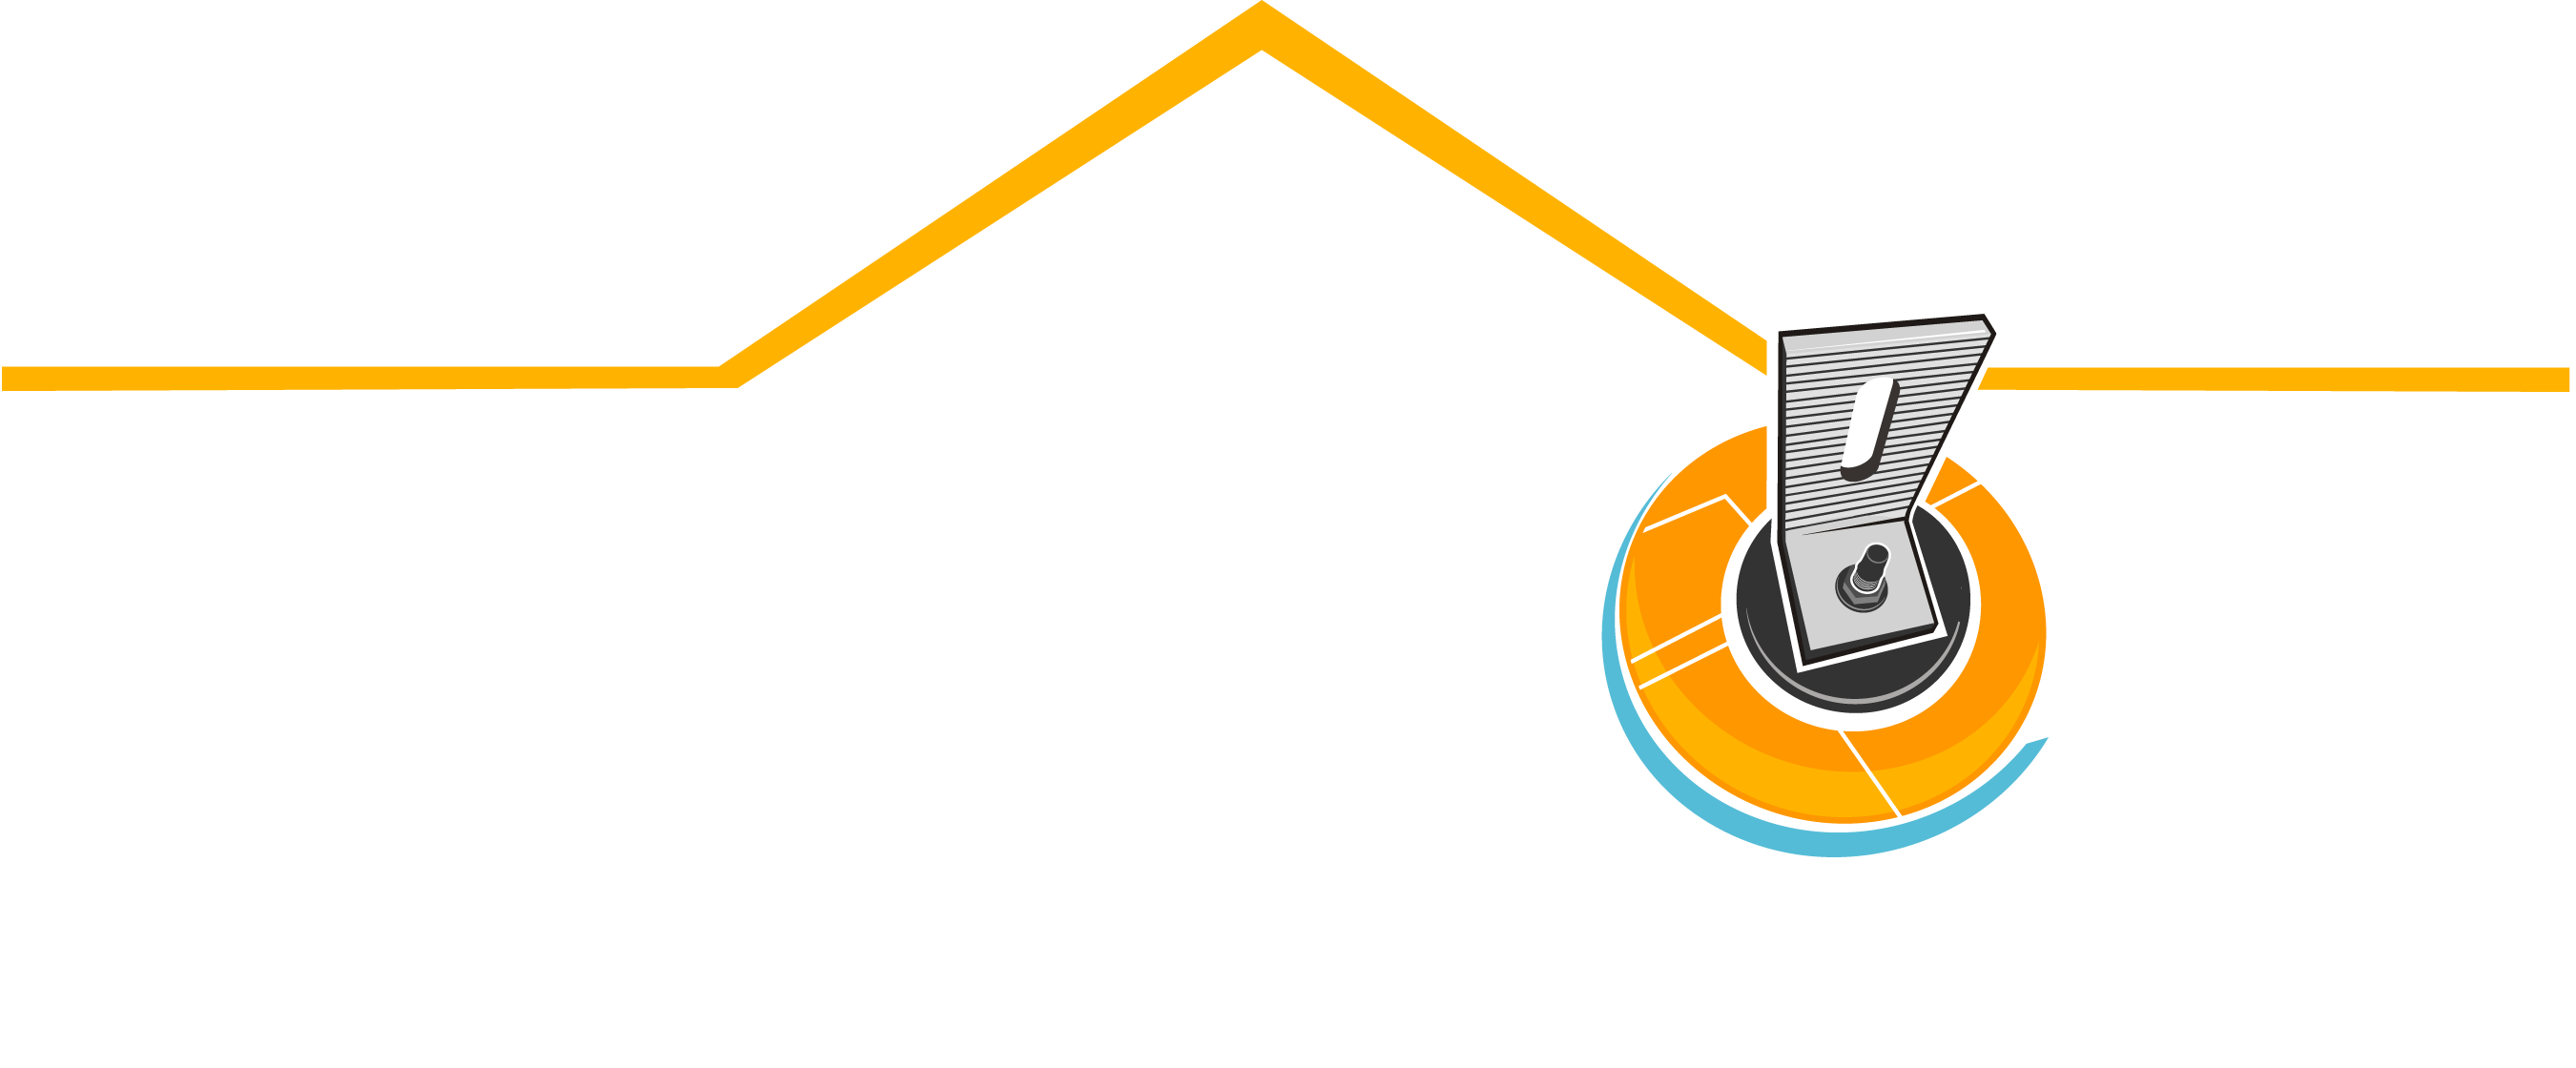 QuickBolt Light Logo